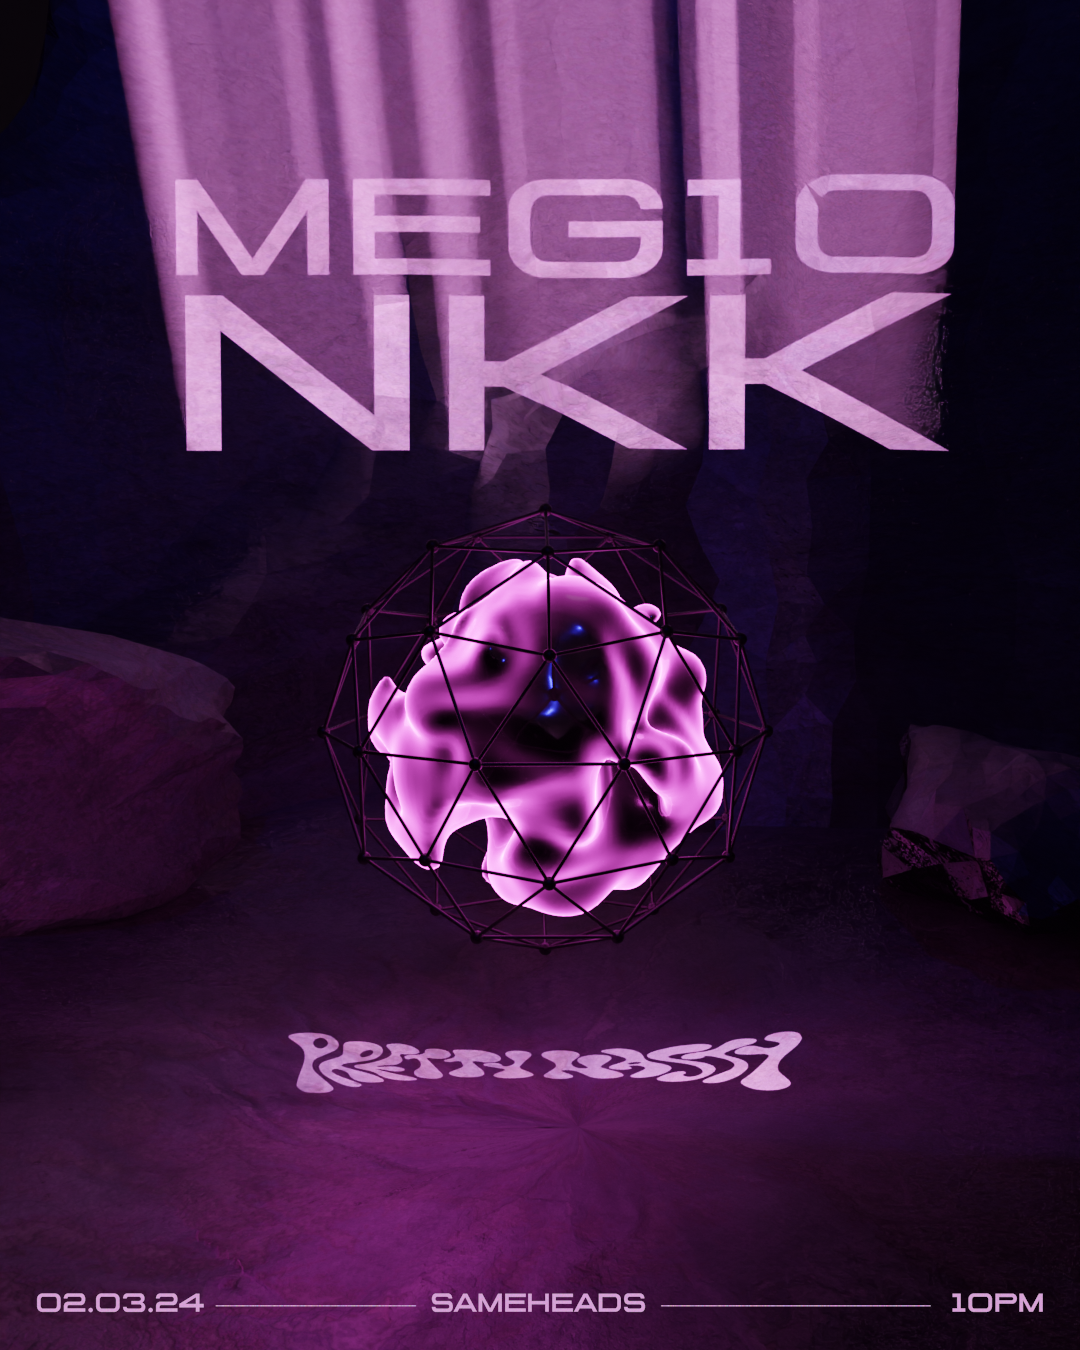 Pretty Nasty with Meg10 & NKK - Página frontal